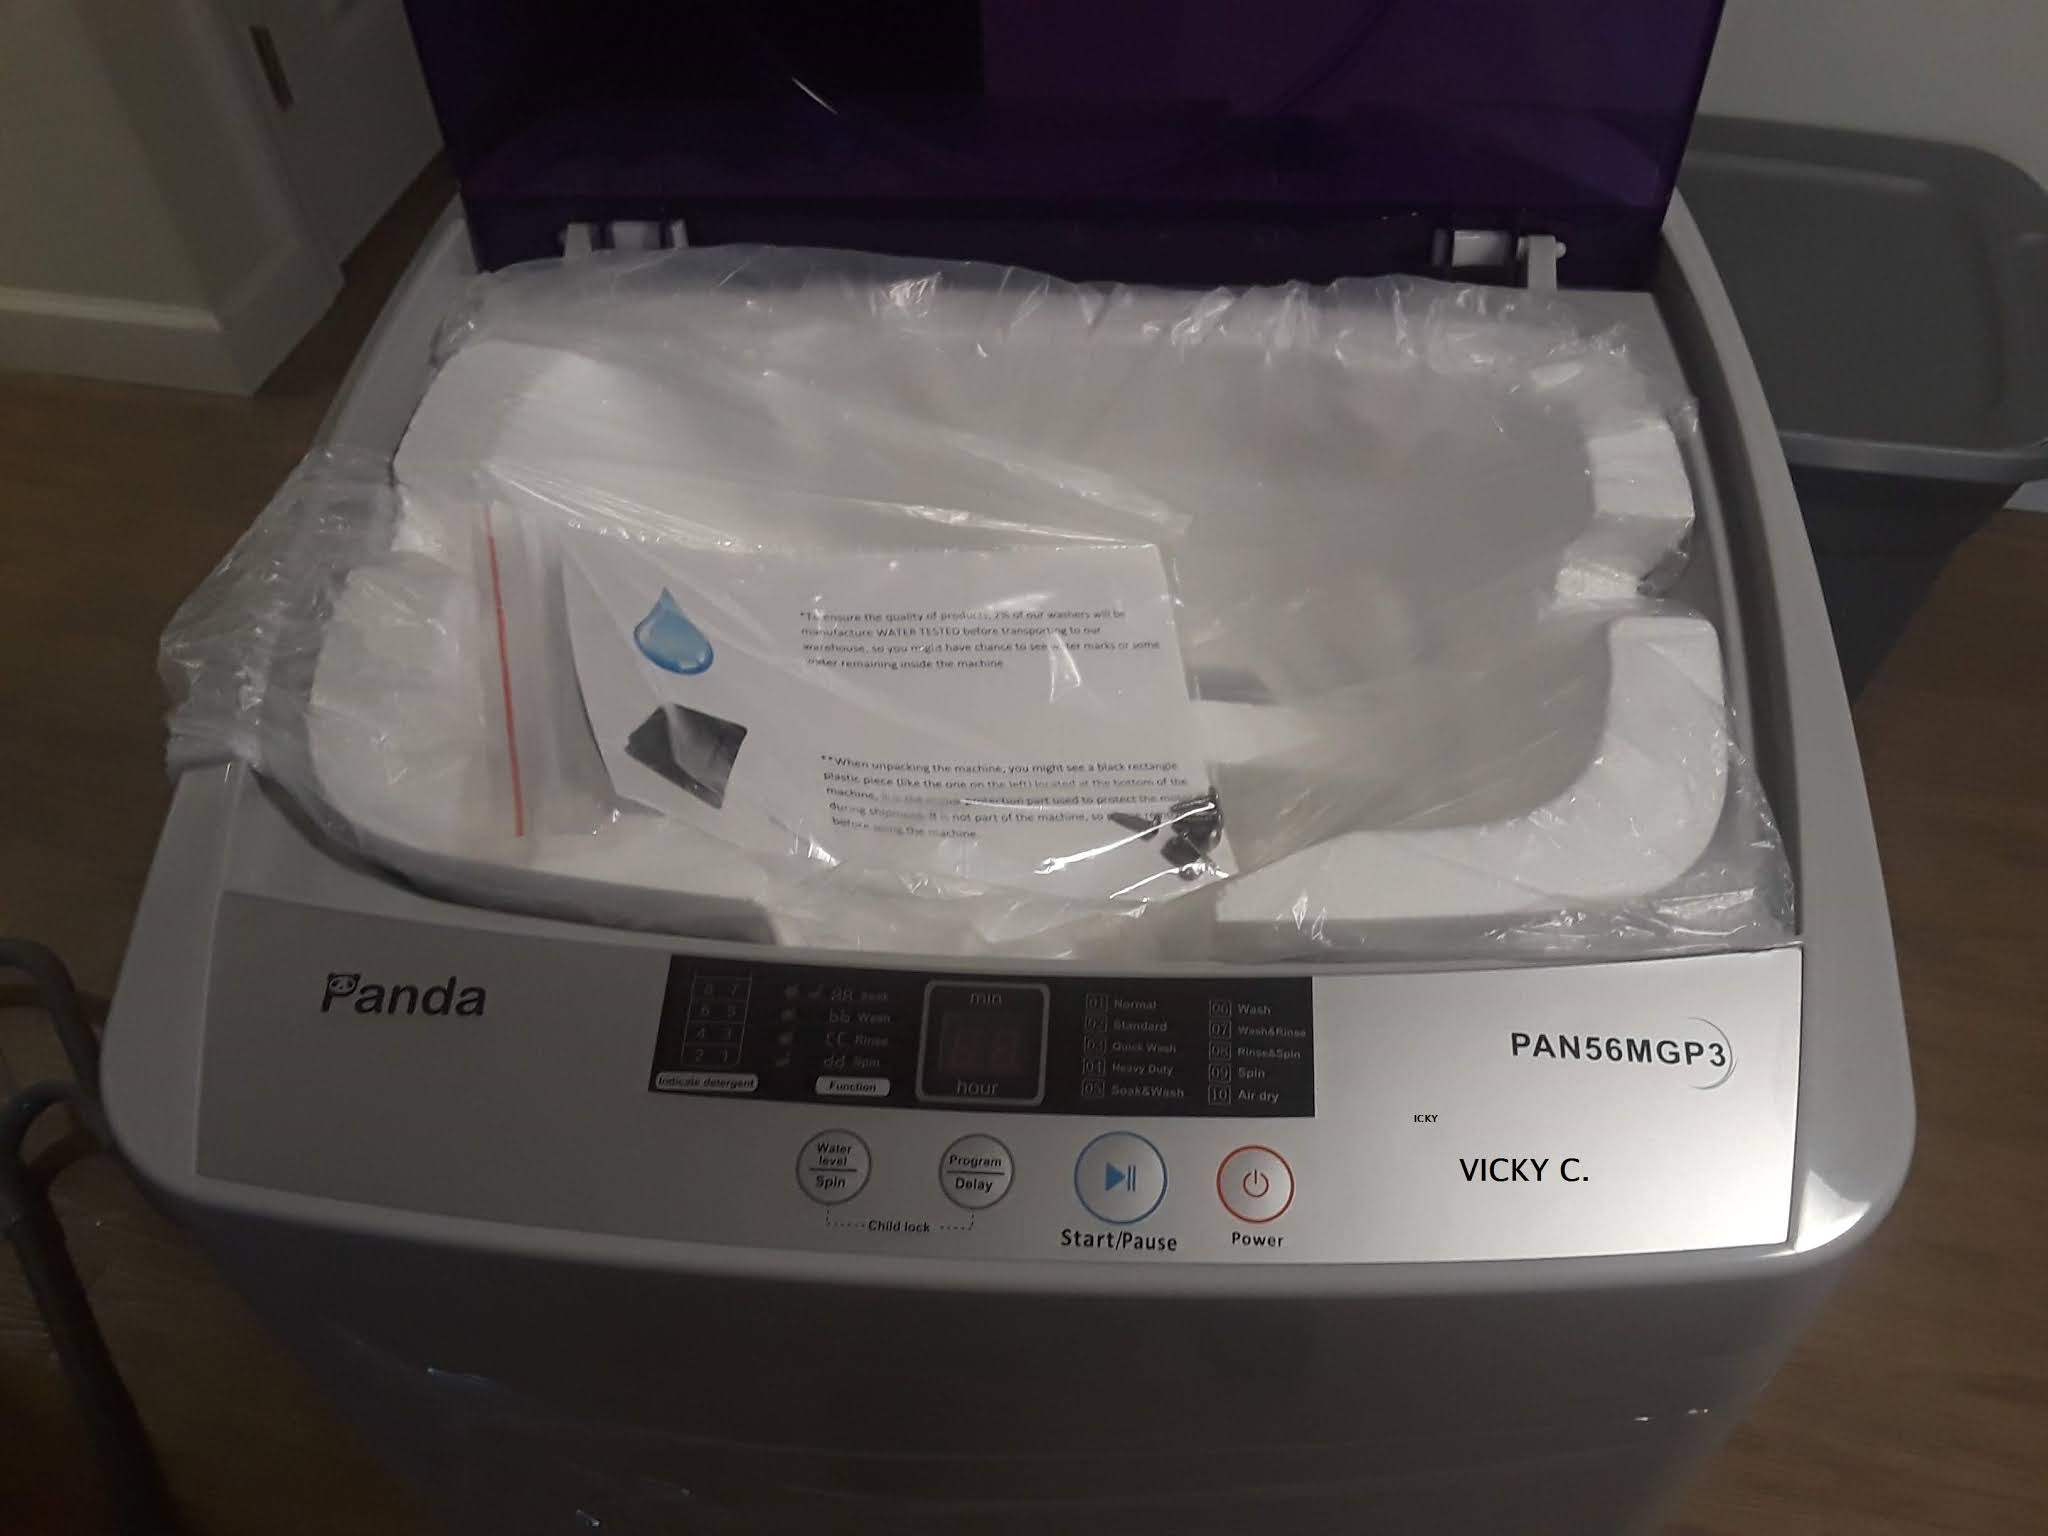 Vic's Hodge Podge: My review of the Panda (PAN56MGP3) compact washing